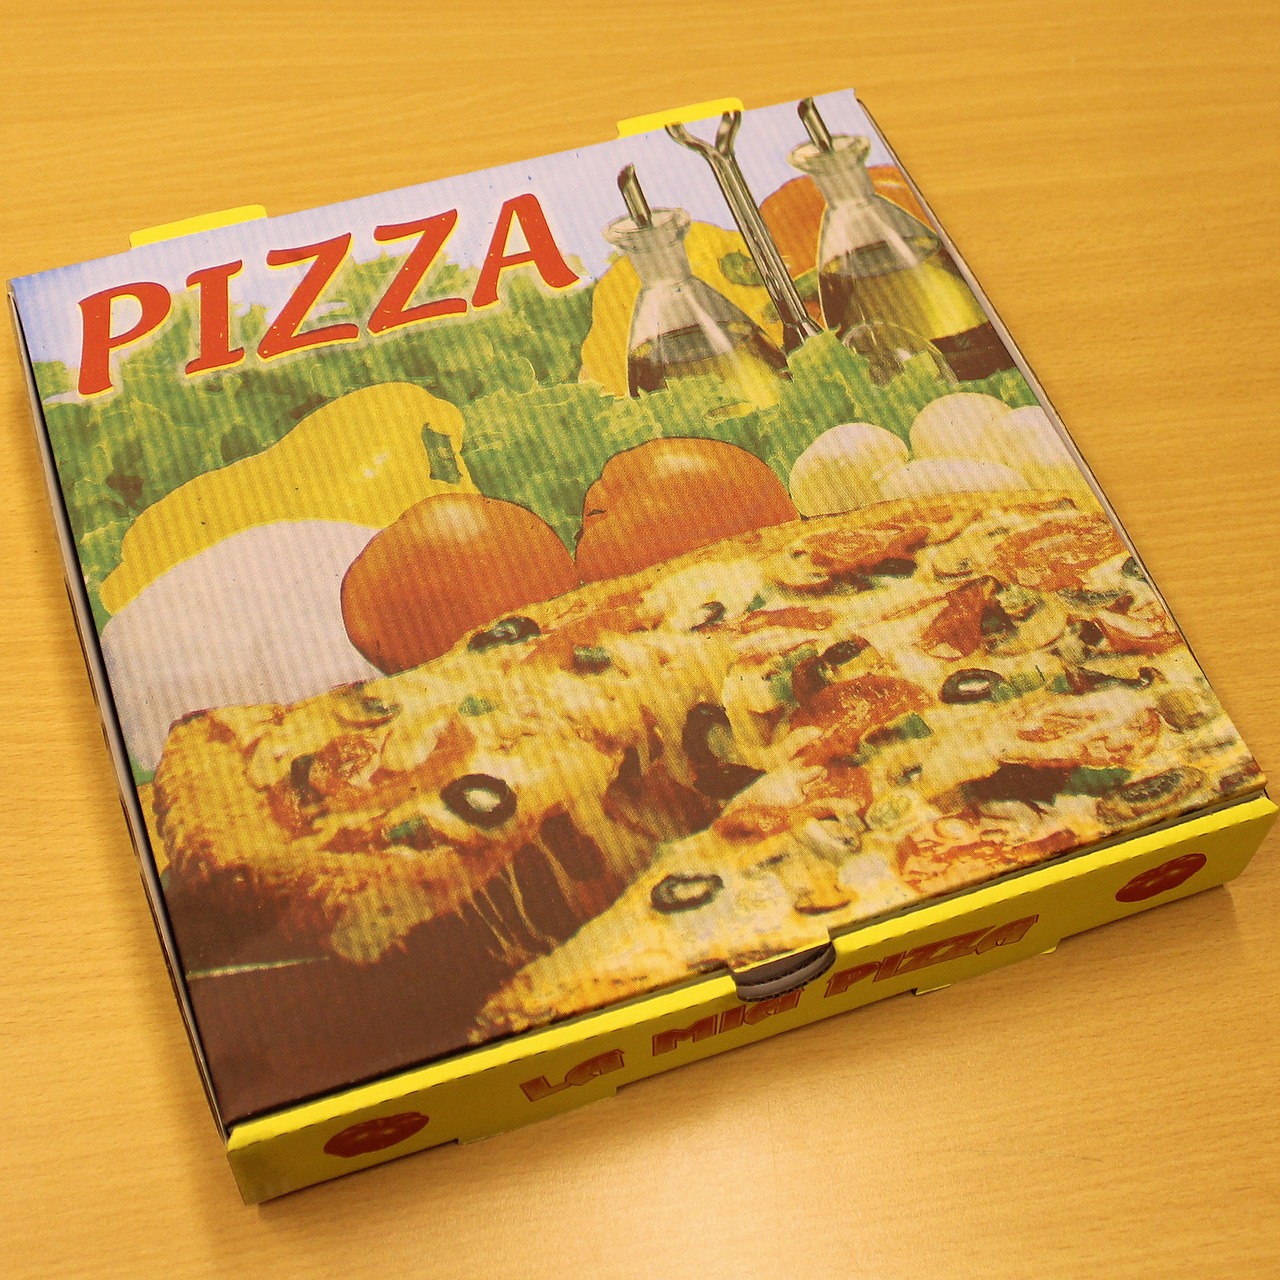 pizza pizza carton pizza service free photo